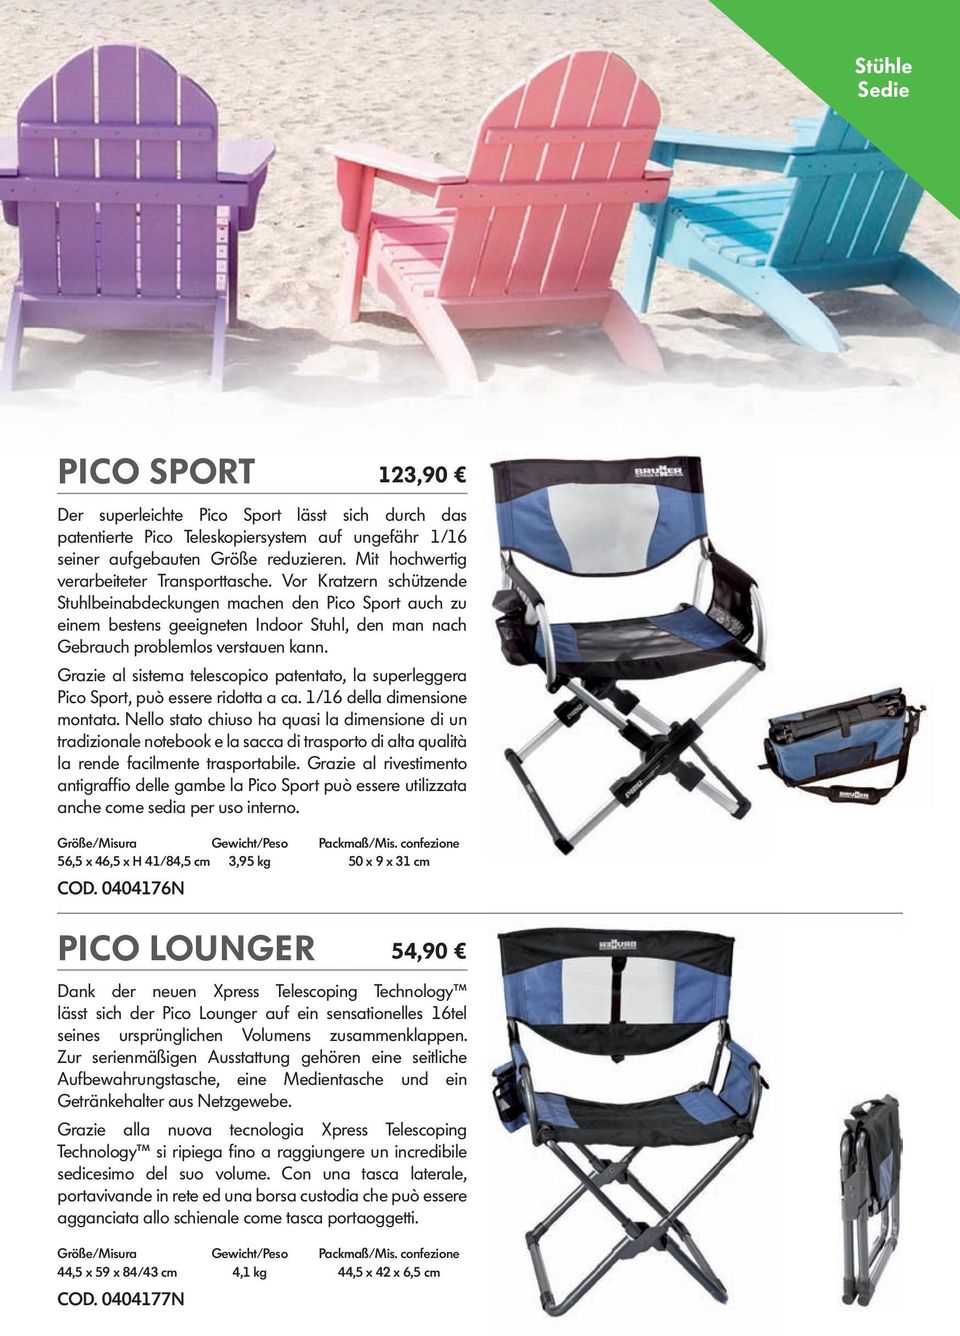 Vor Kratzern schützende Stuhlbeinabdeckungen machen den Pico Sport auch zu einem bestens geeigneten Indoor Stuhl, den man nach Gebrauch problemlos verstauen kann.